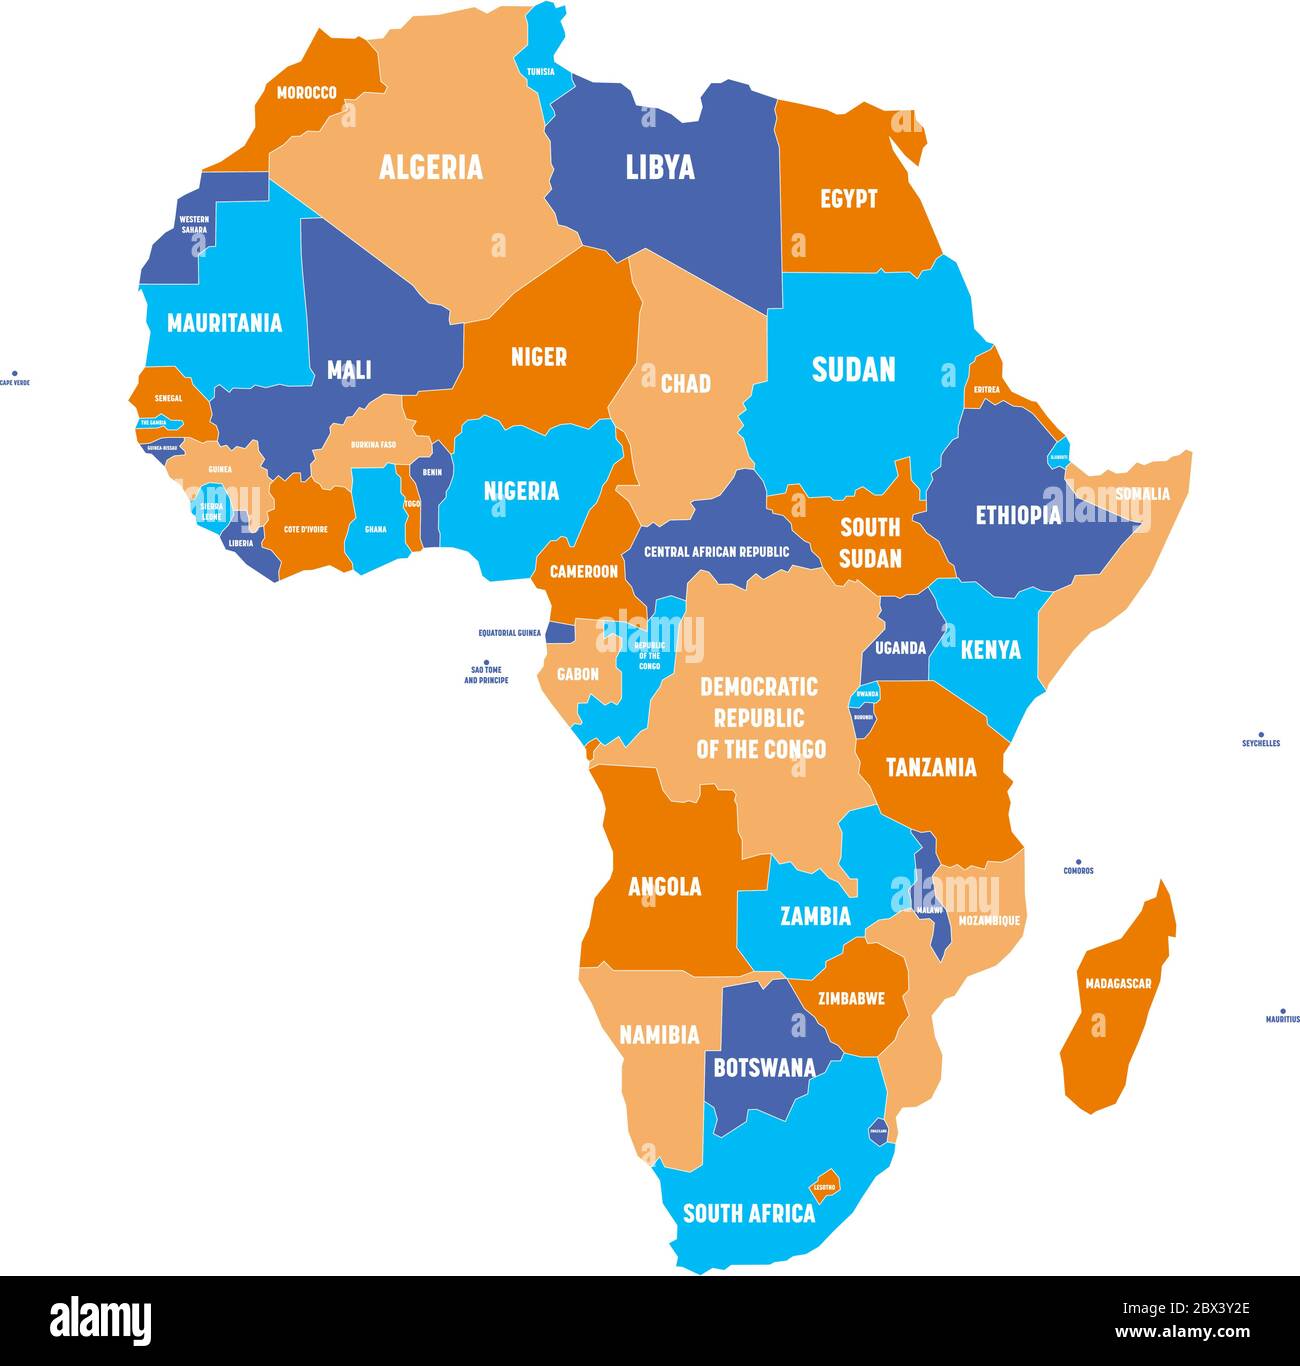 Lista Foto Continente Africano Con Nombres En Espa Ol Alta Definici N Completa K K